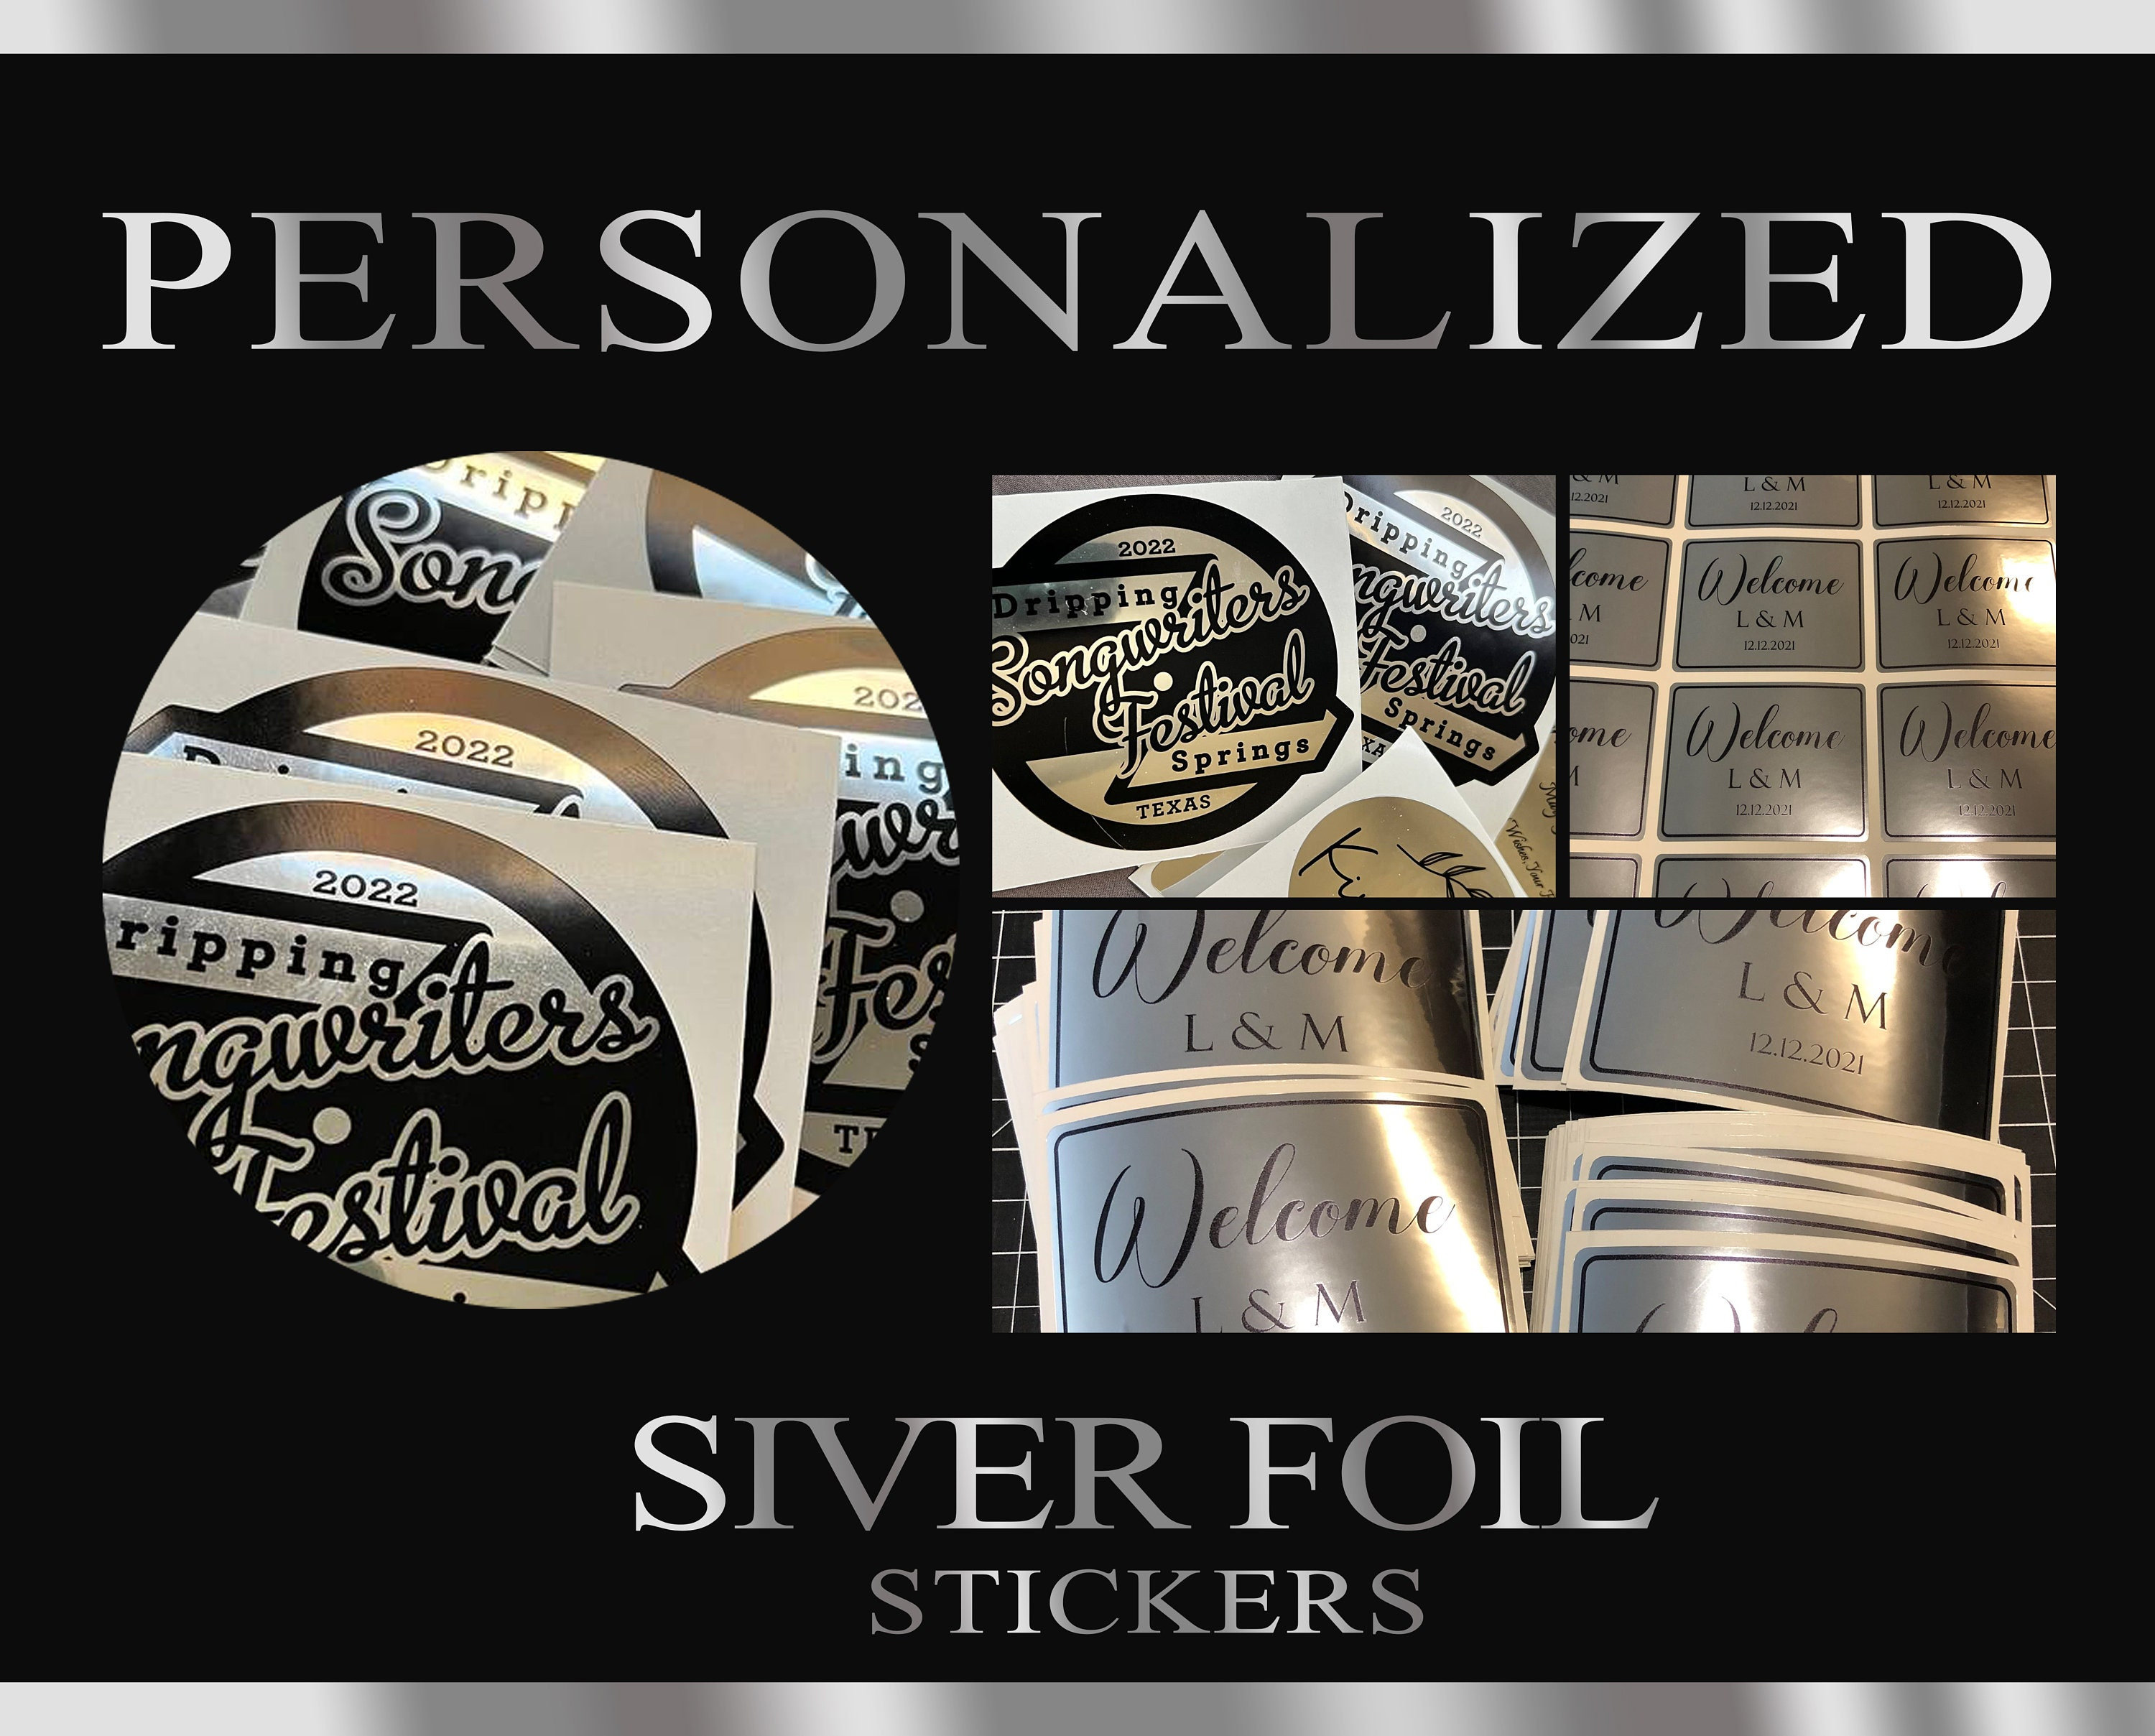 350 Silver Stars School Teacher Reward Stickers Self Adhesive 15mm I31 